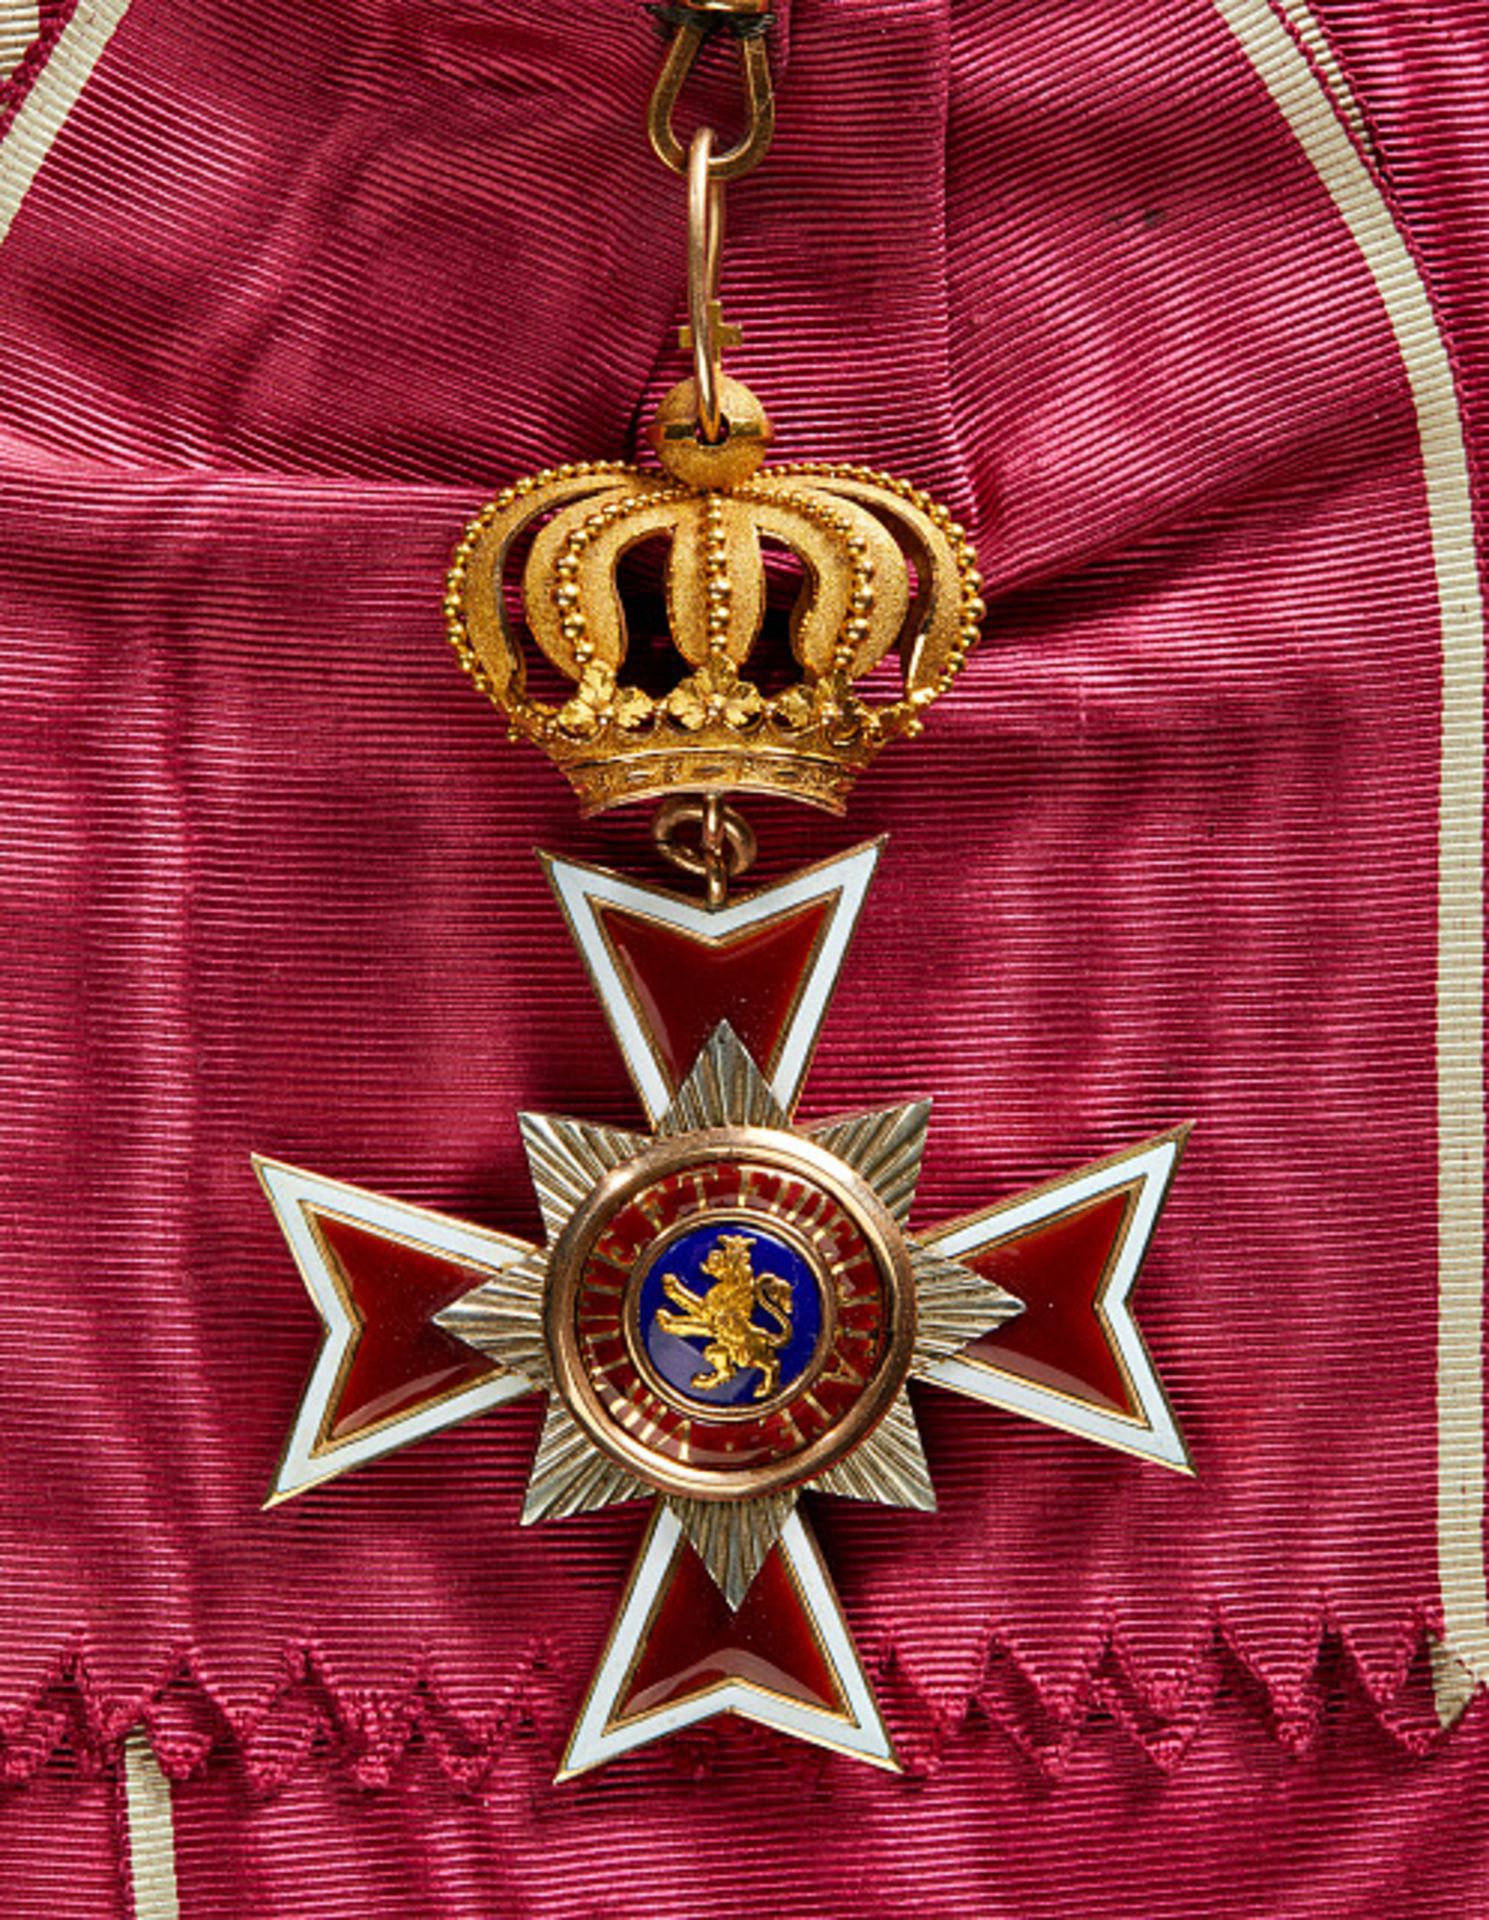 KURFÜRSTENTUM HESSEN-KASSEL - WILHELMS-ORDEN : Großkreuz. Das Ordenskleinod Gold und Emaille, an